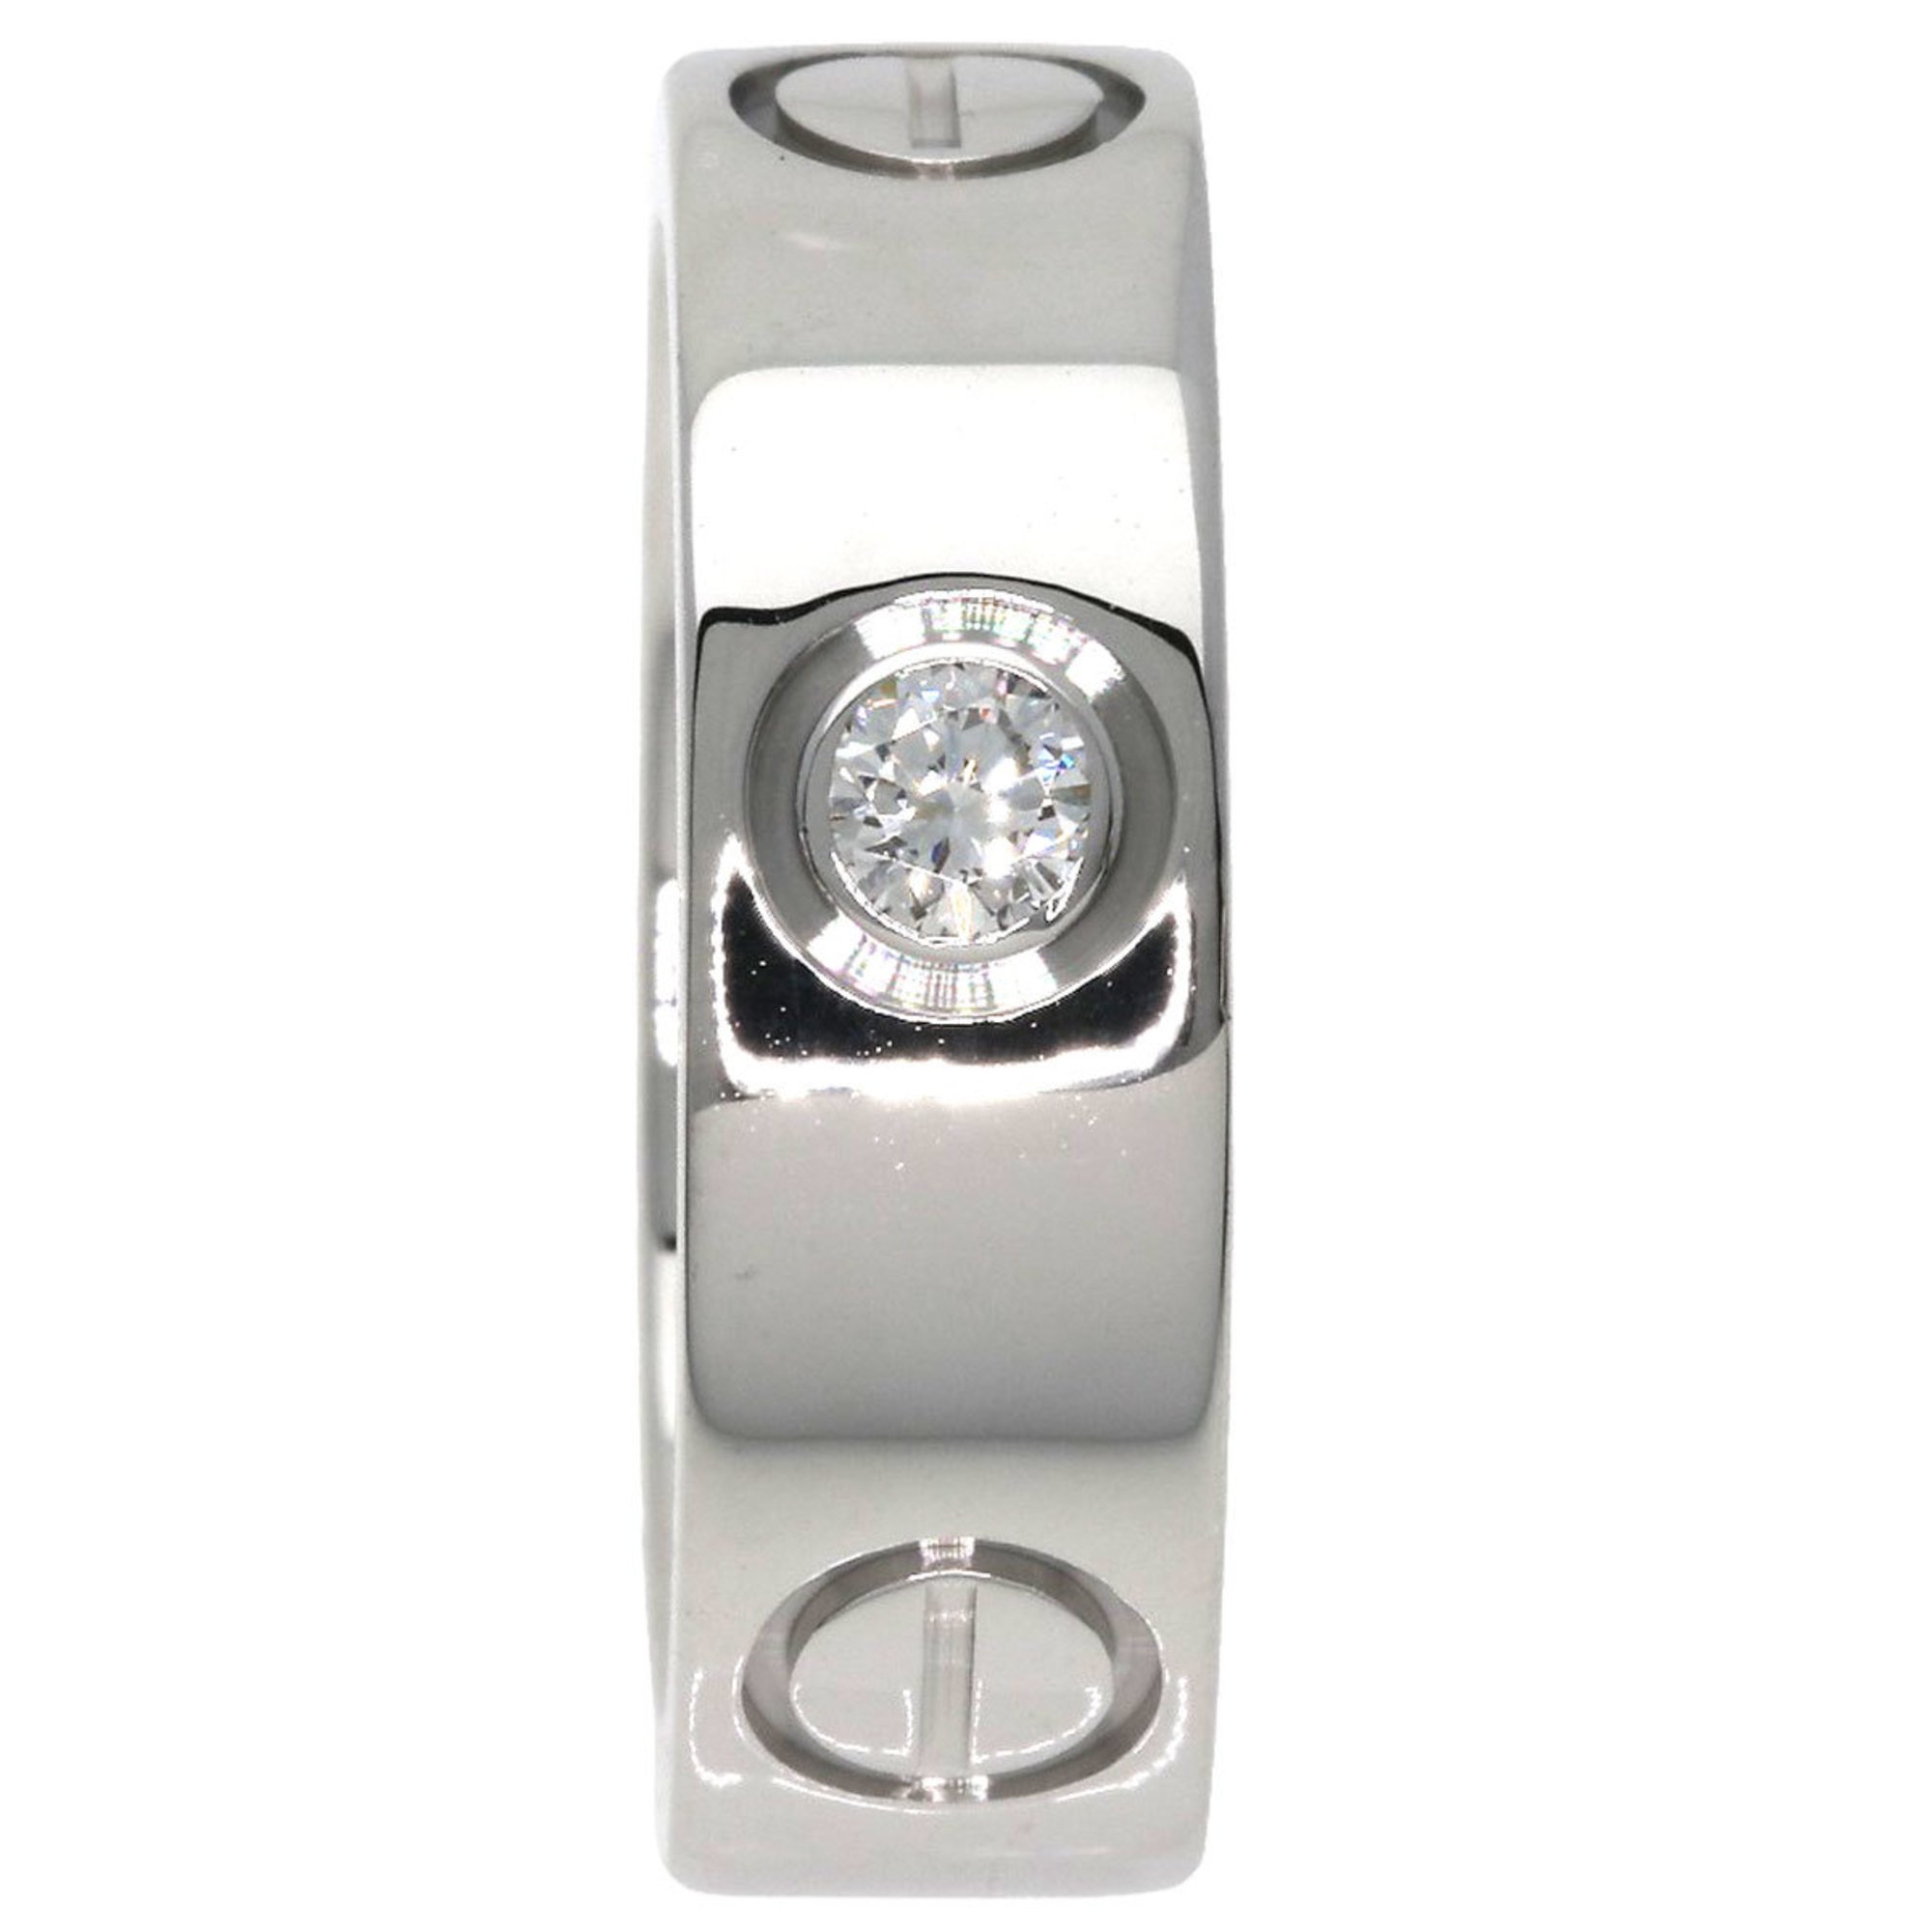 Cartier Love Ring Half Diamond #47 K18 White Gold Women's